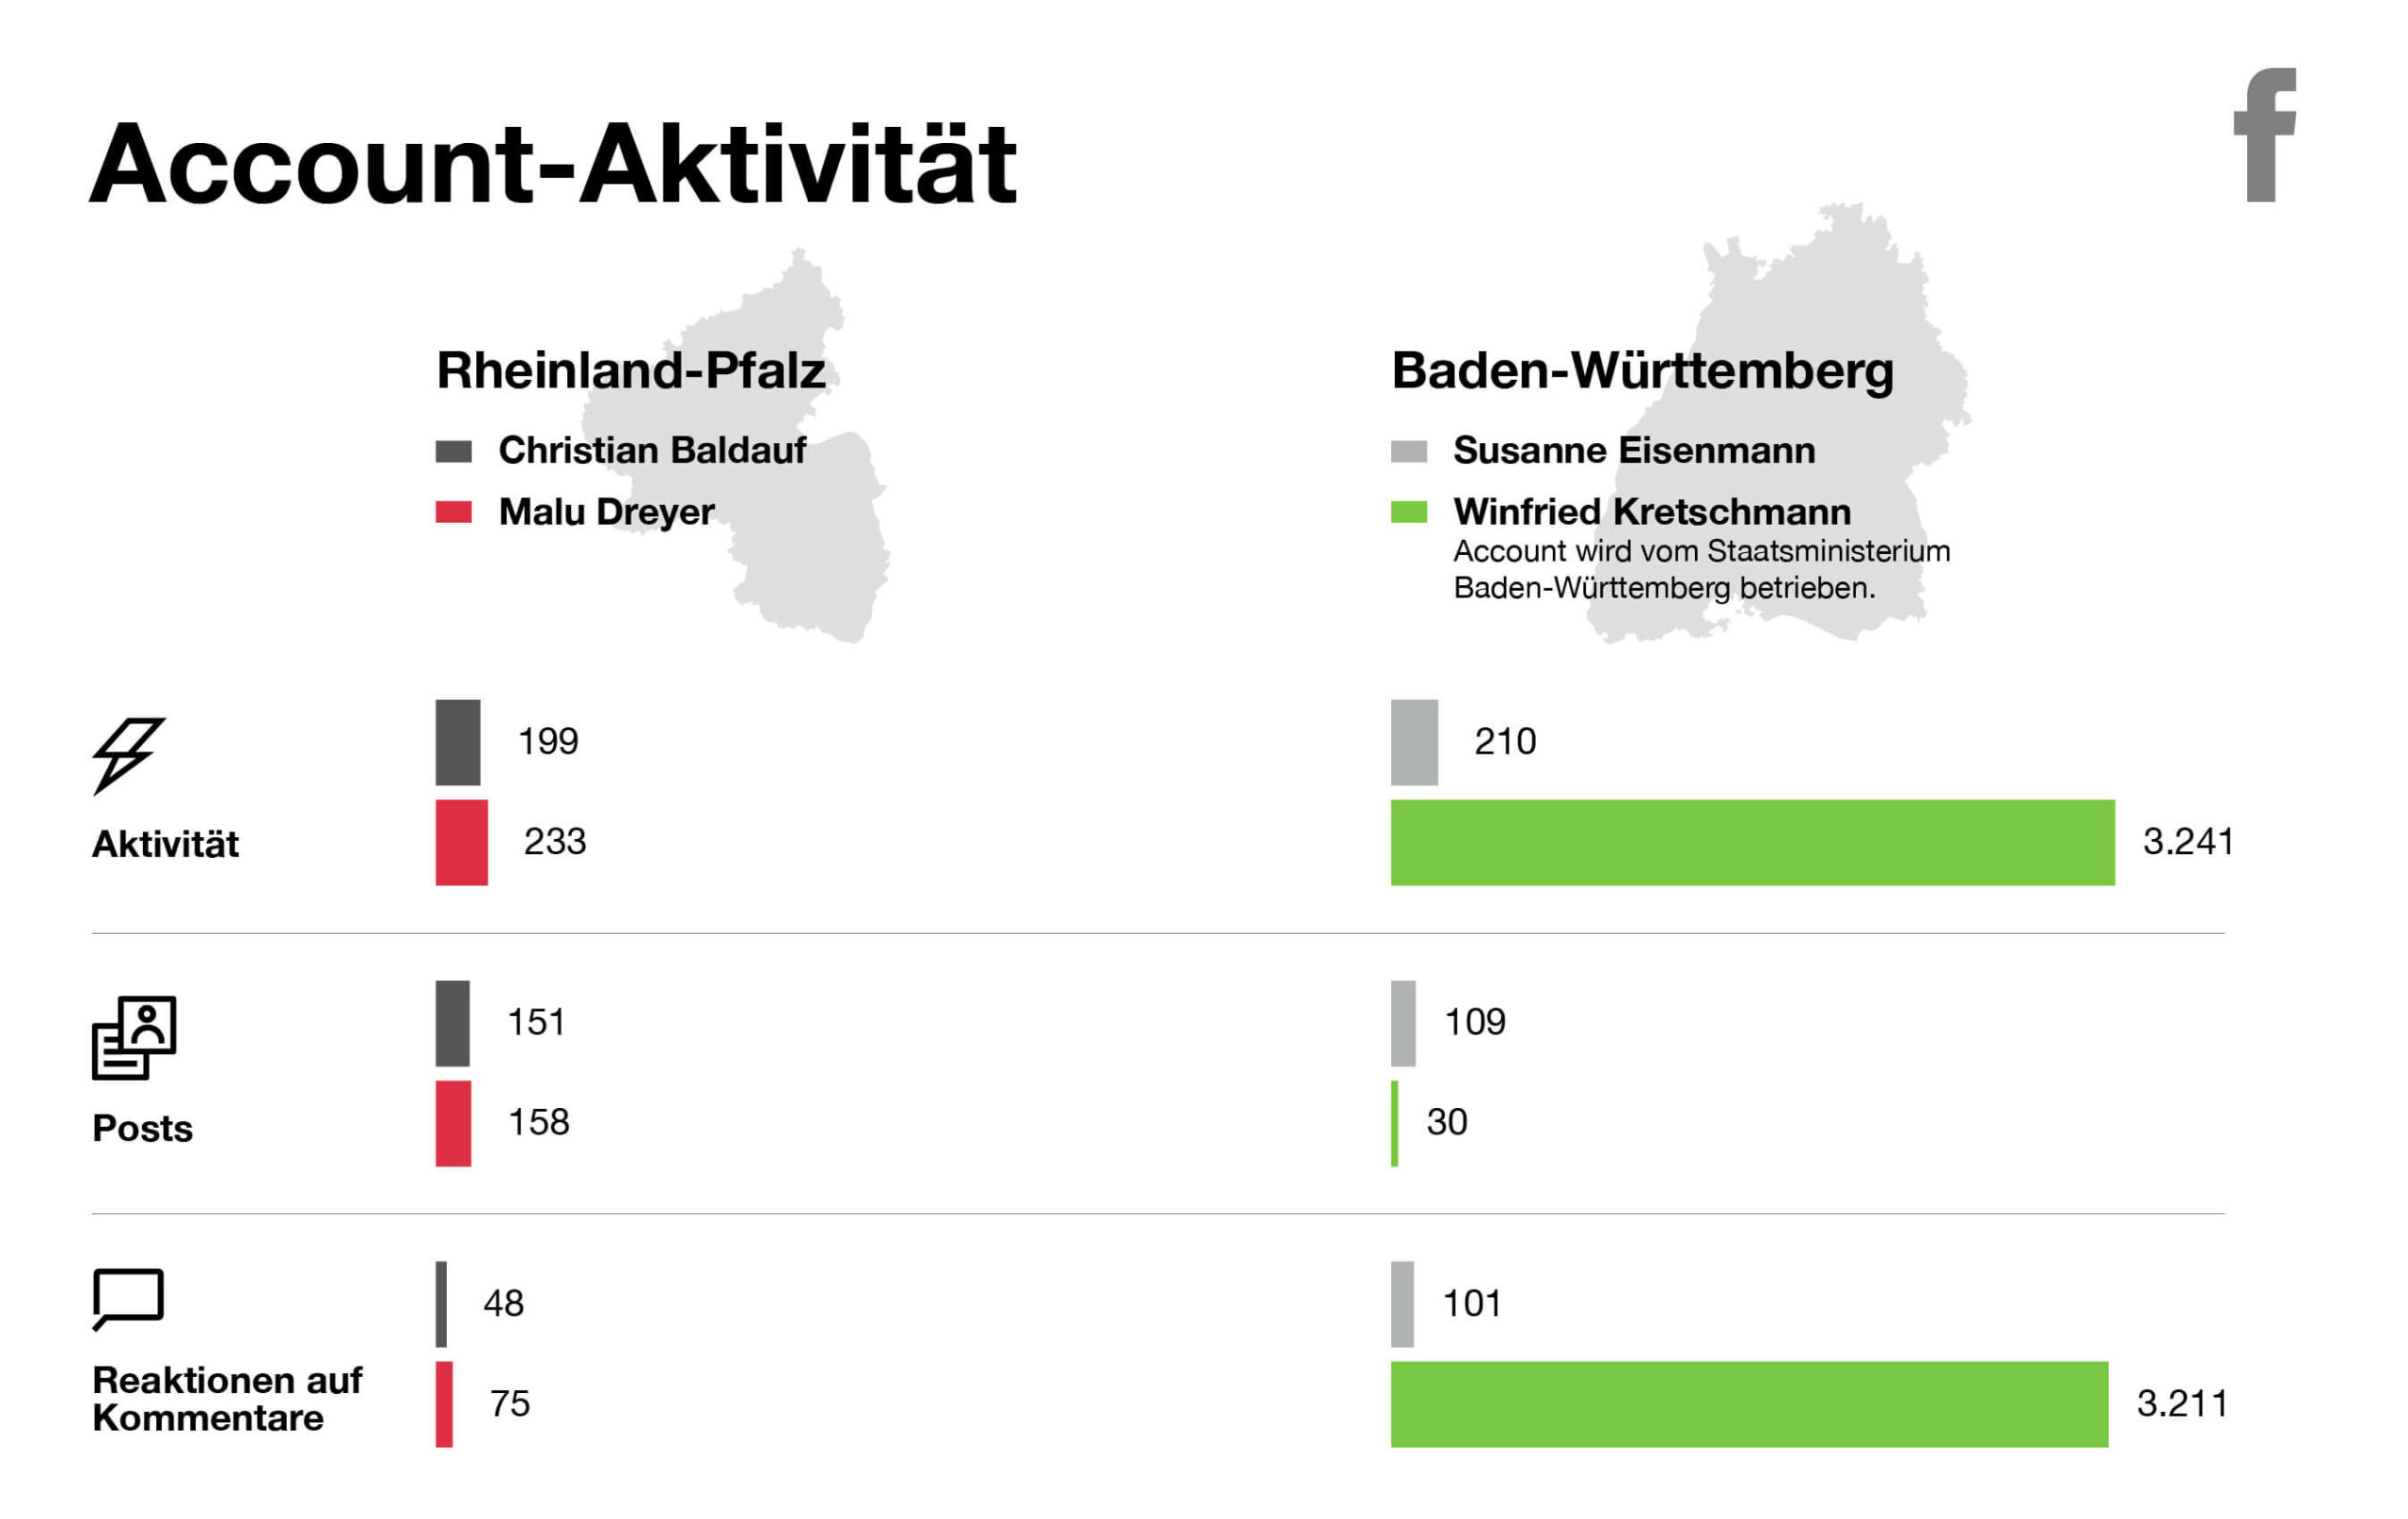 OSK Polit Special - Landtagswahlen Baden-Württemberg und Rheinland-Pfalz - Grafik Account-Aktivität